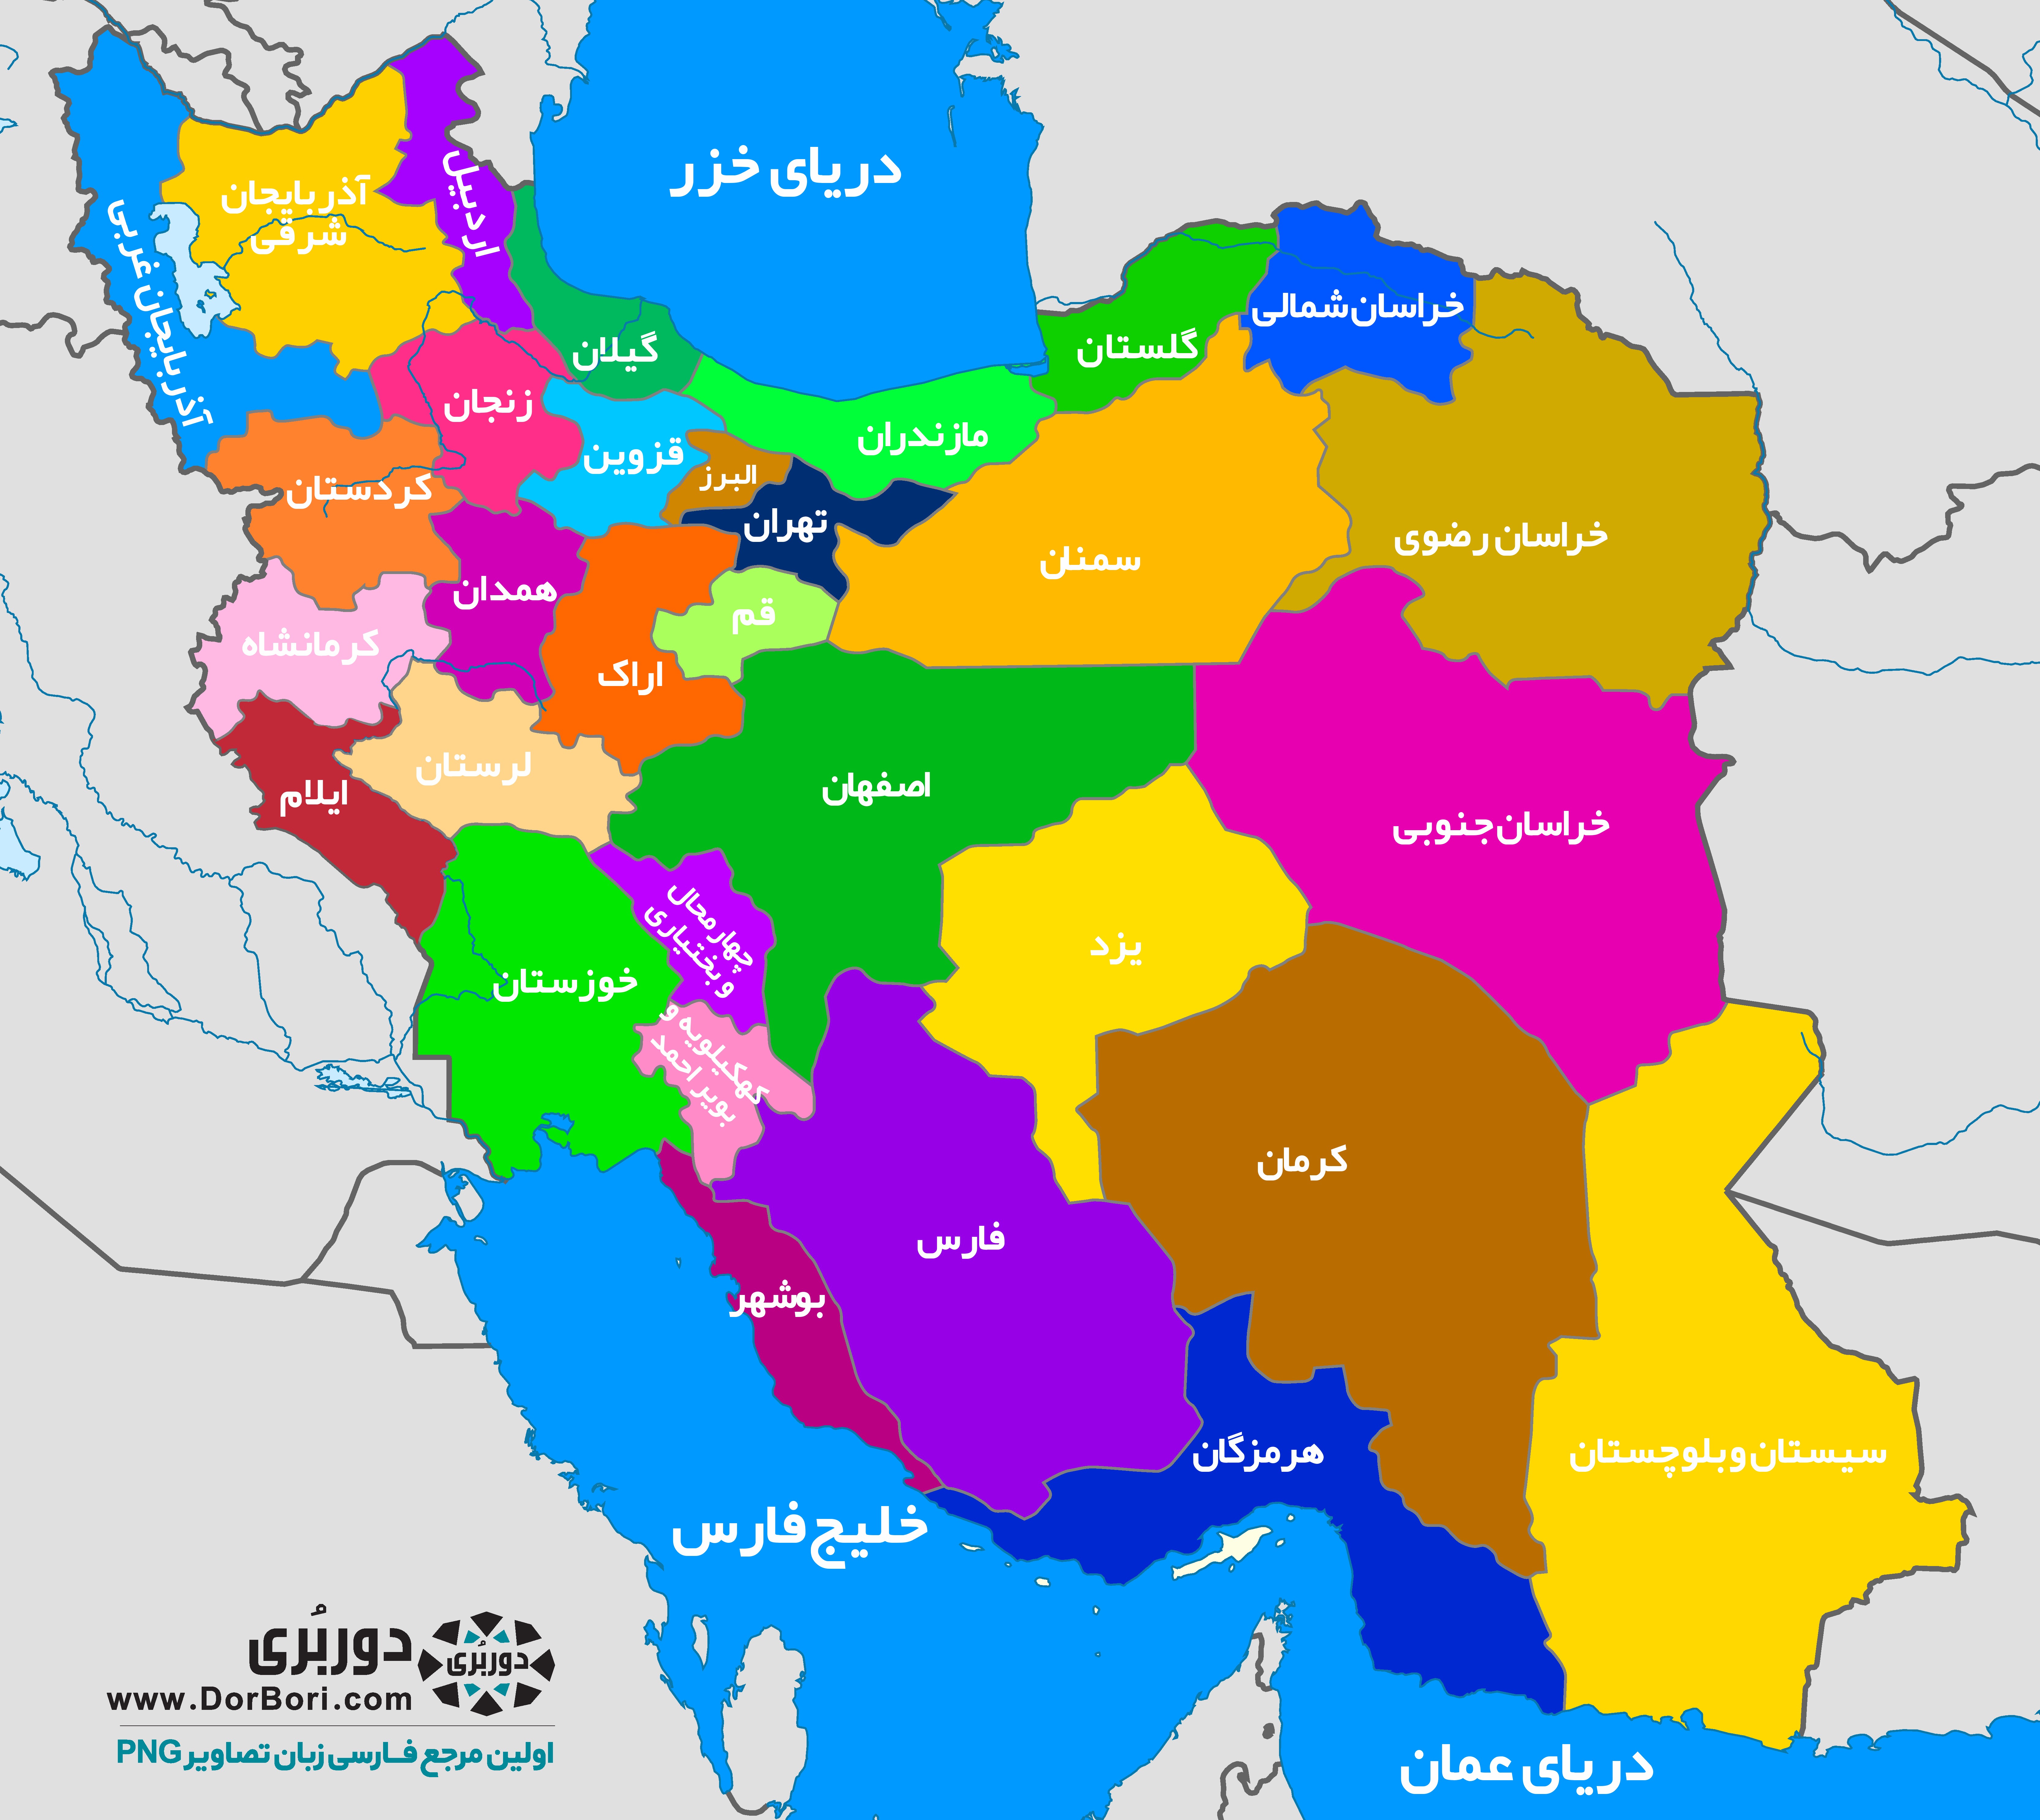 عکس نقشه ی ایران با کیفیت بالا
